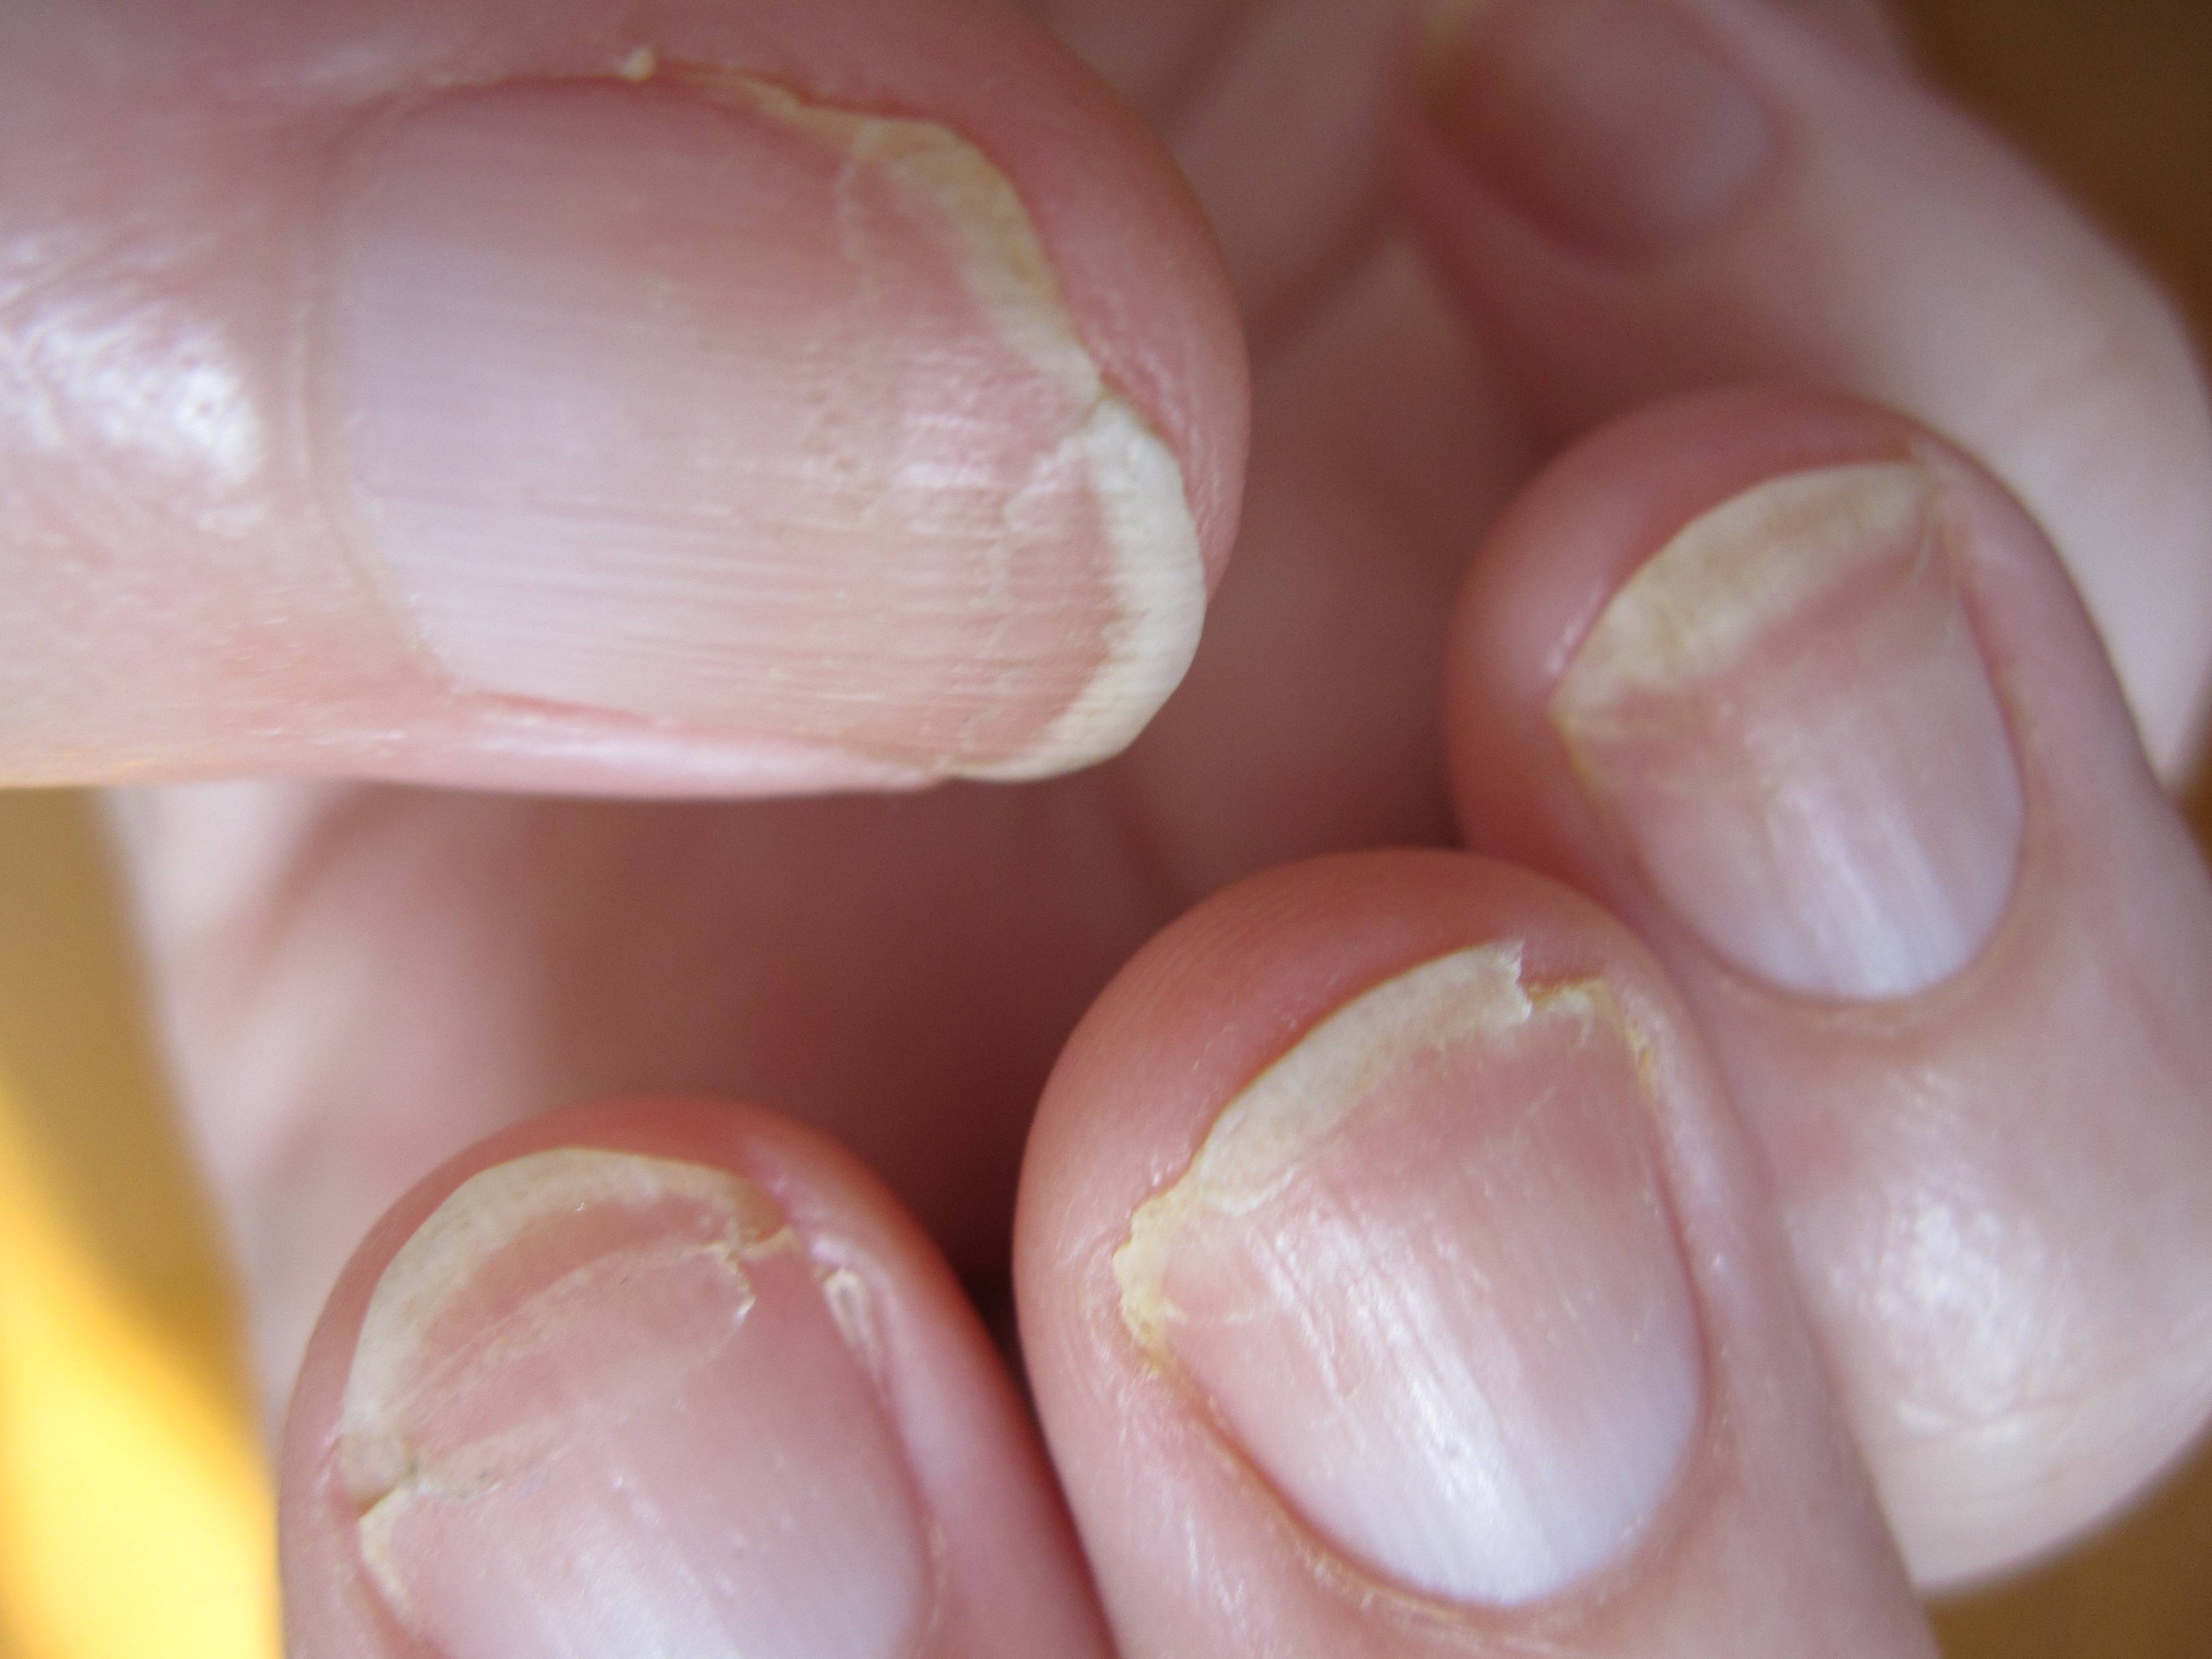 Ногти отслаиваются от ногтевого